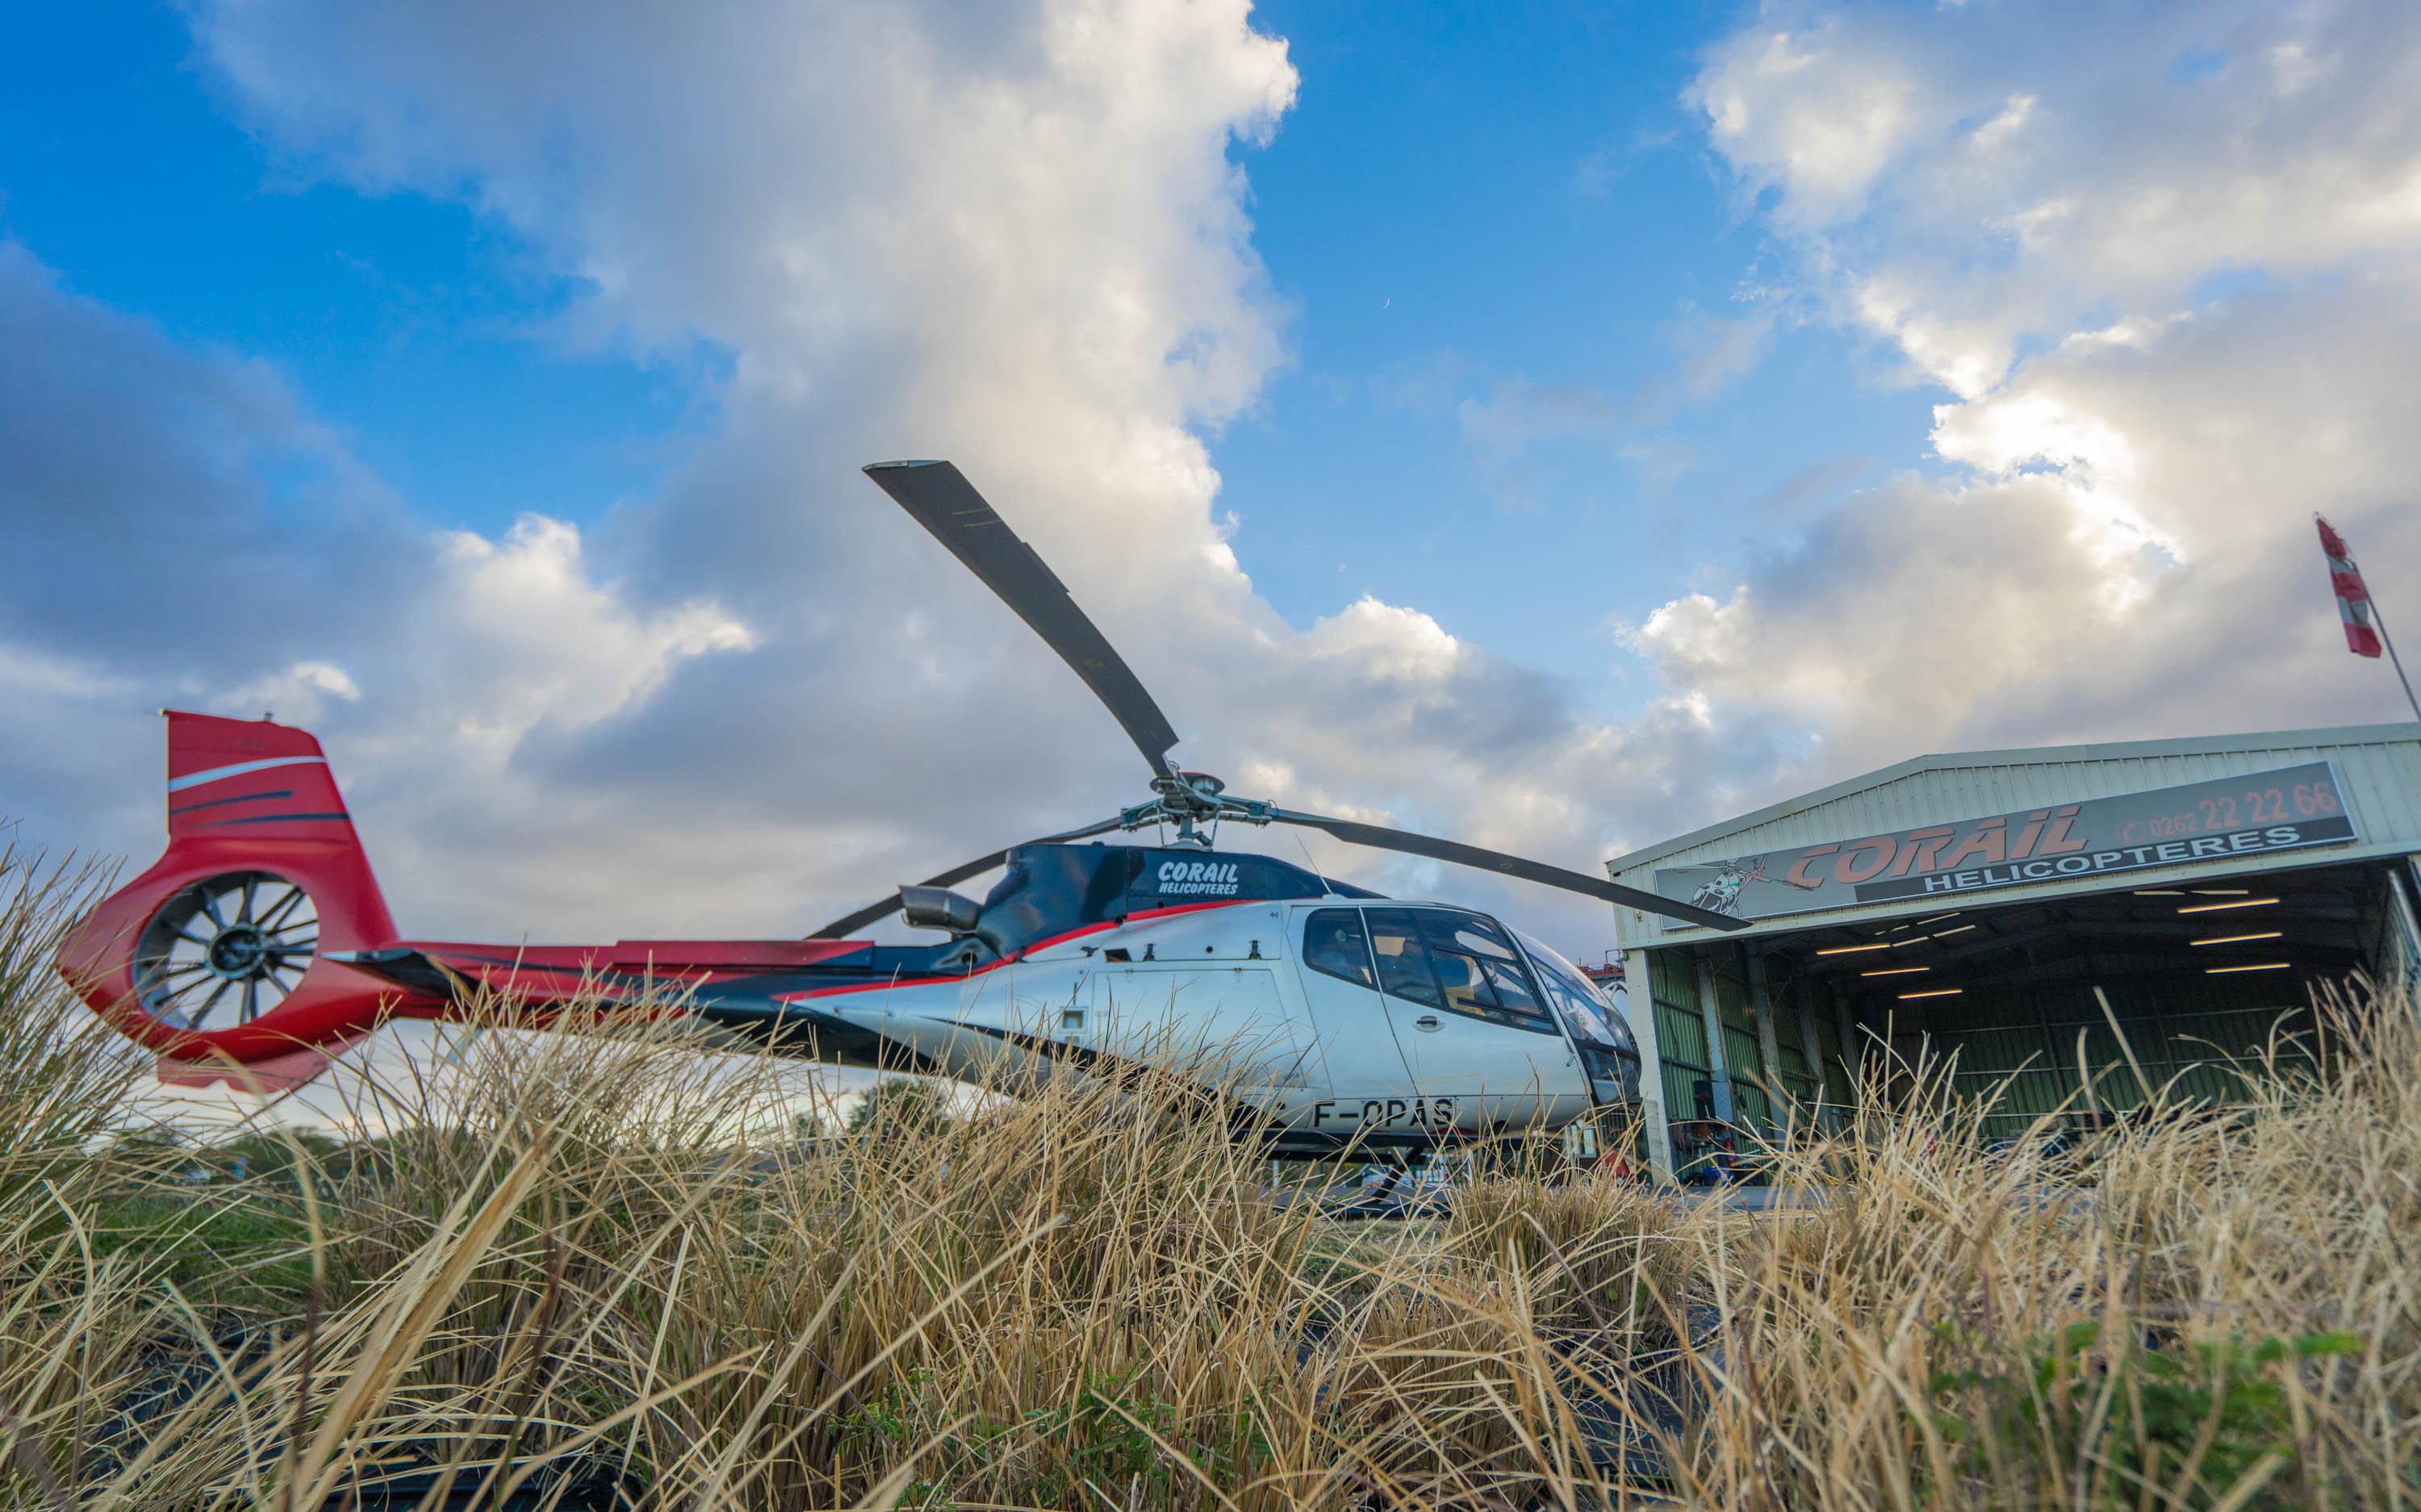 来到留尼汪岛的第一天,我选择乘坐直升机从千米高空俯瞰这座金银岛